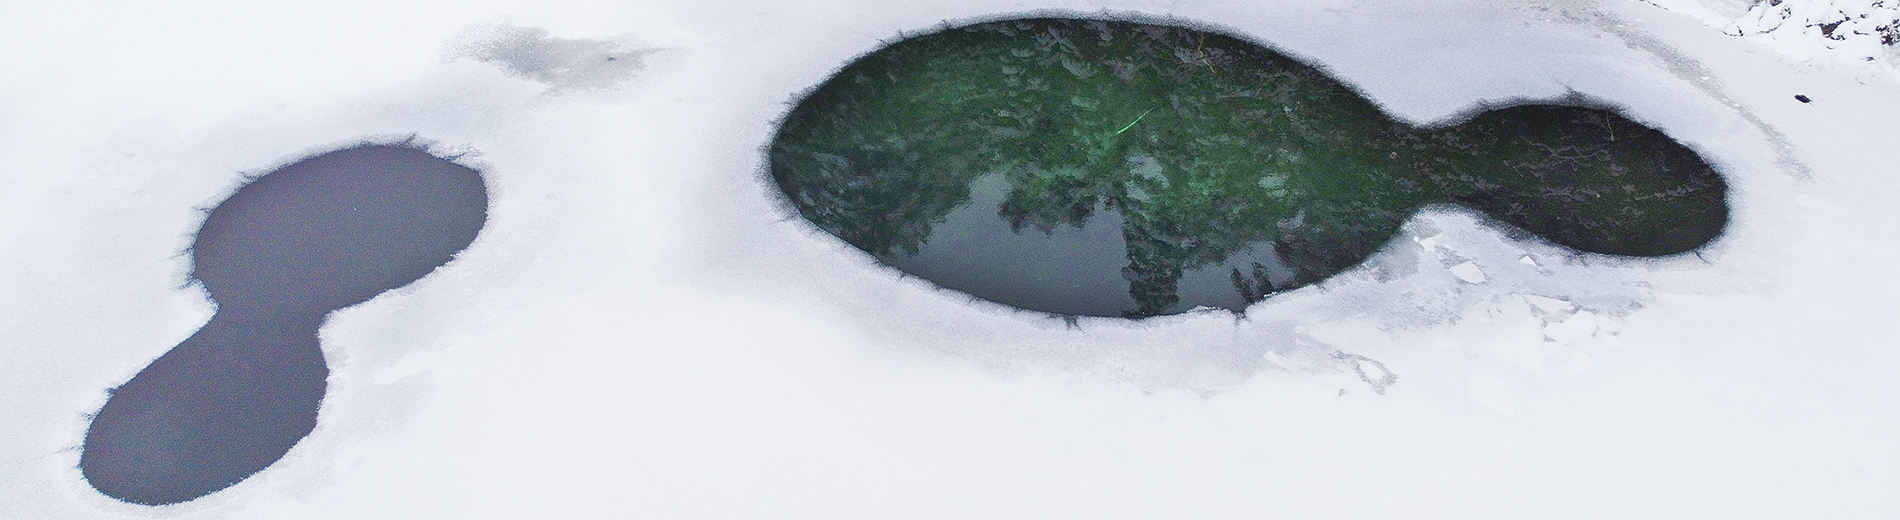 Snow-world: Äntu lakes, Koeru, Aegviidu